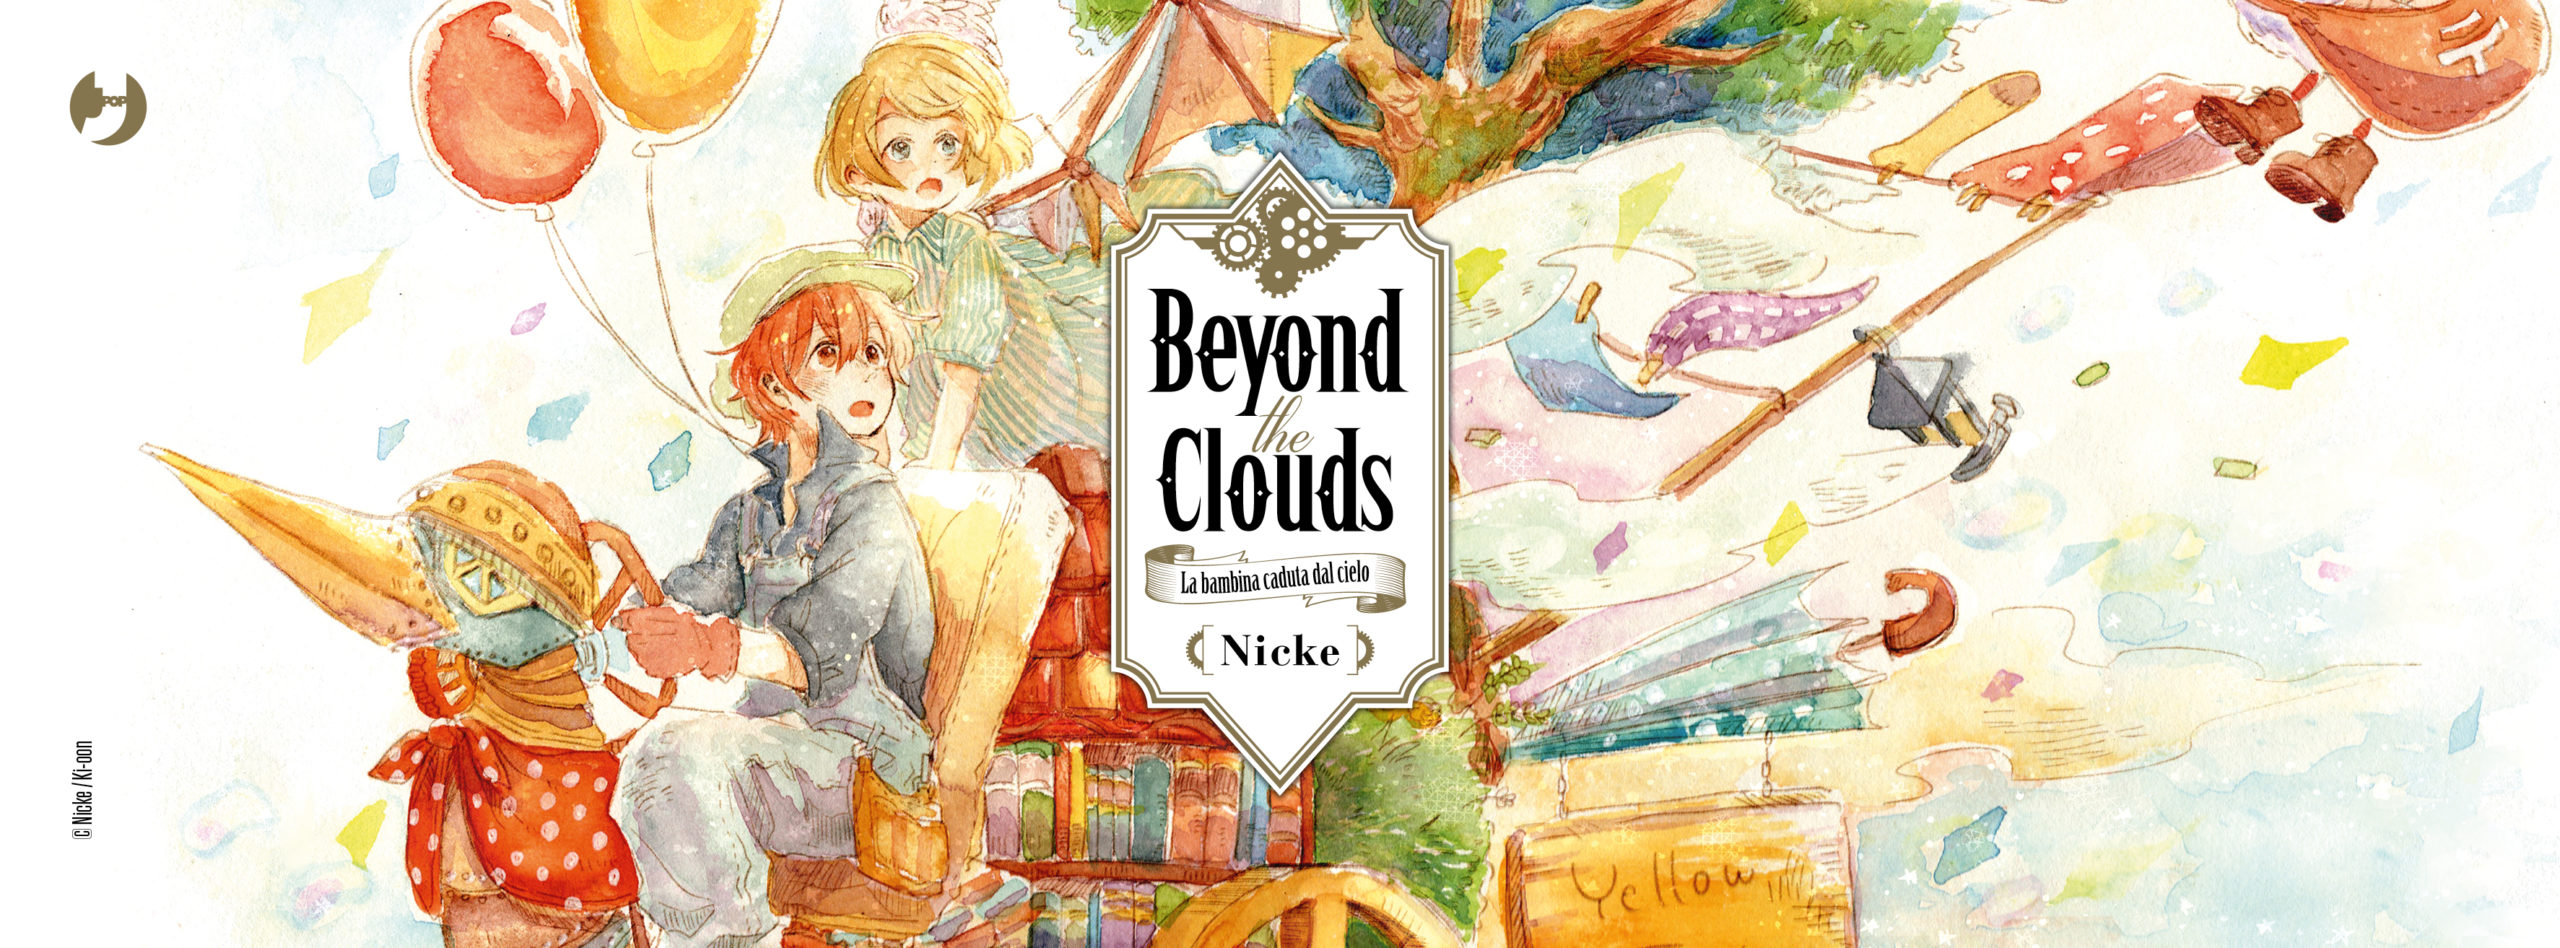 beyond cloud tsugumi project